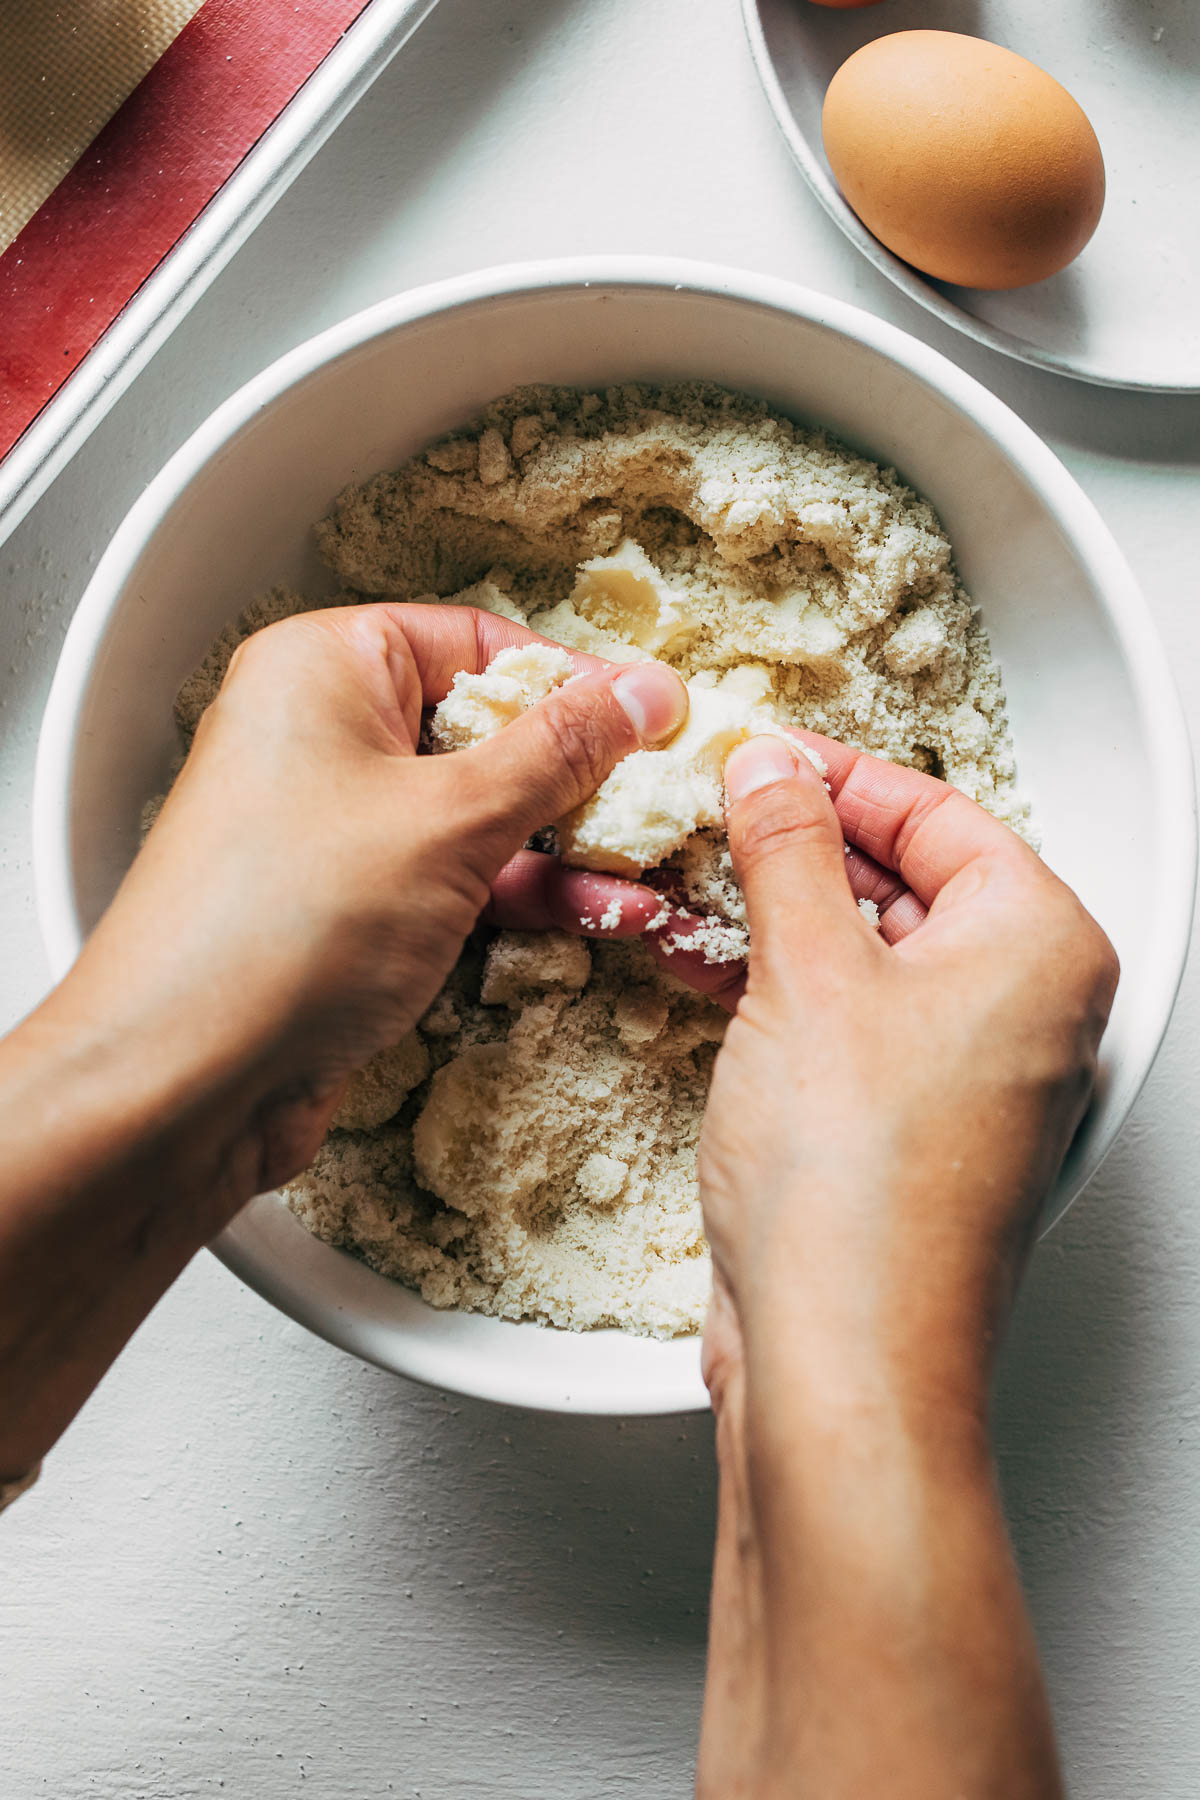 Woman's hands mixing butter into an almond flour mixture.